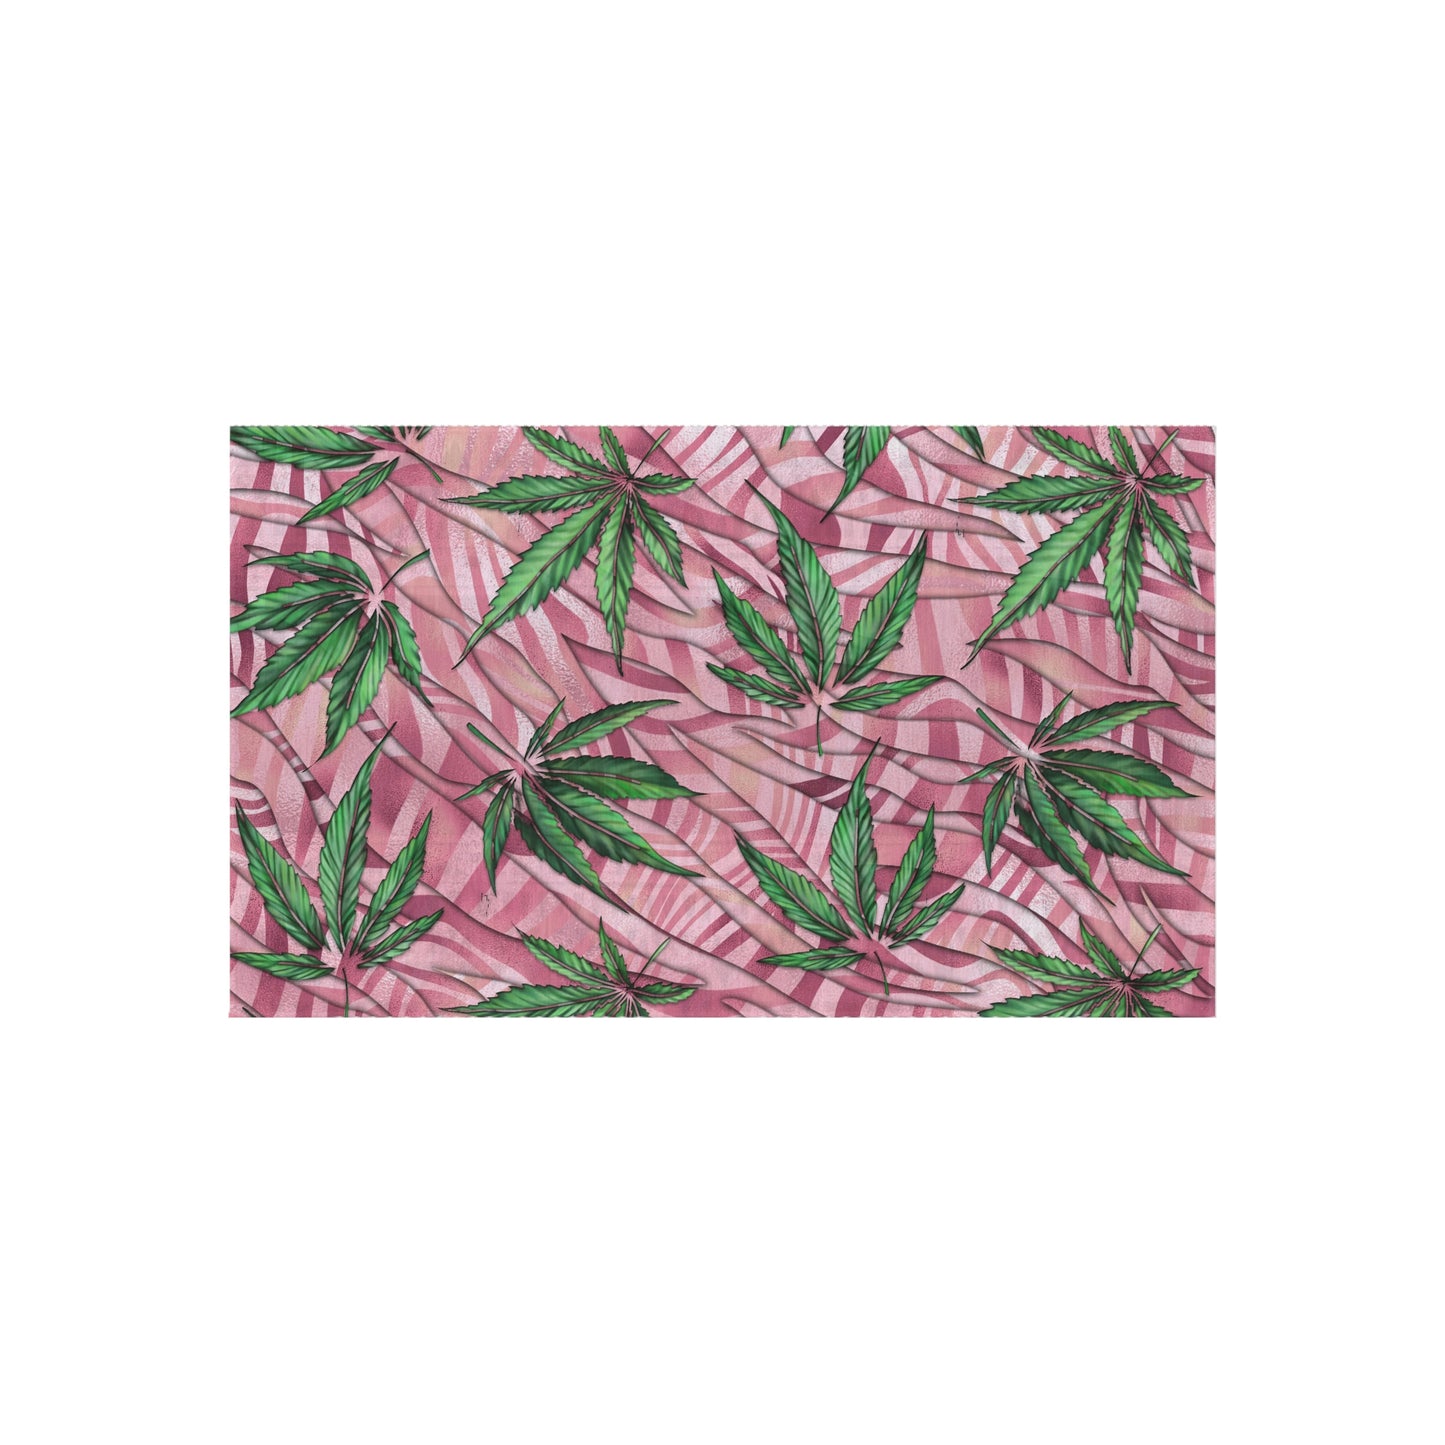 Sassy Pink And Green 420 Weed Marijuana Leaf Outdoor Rug